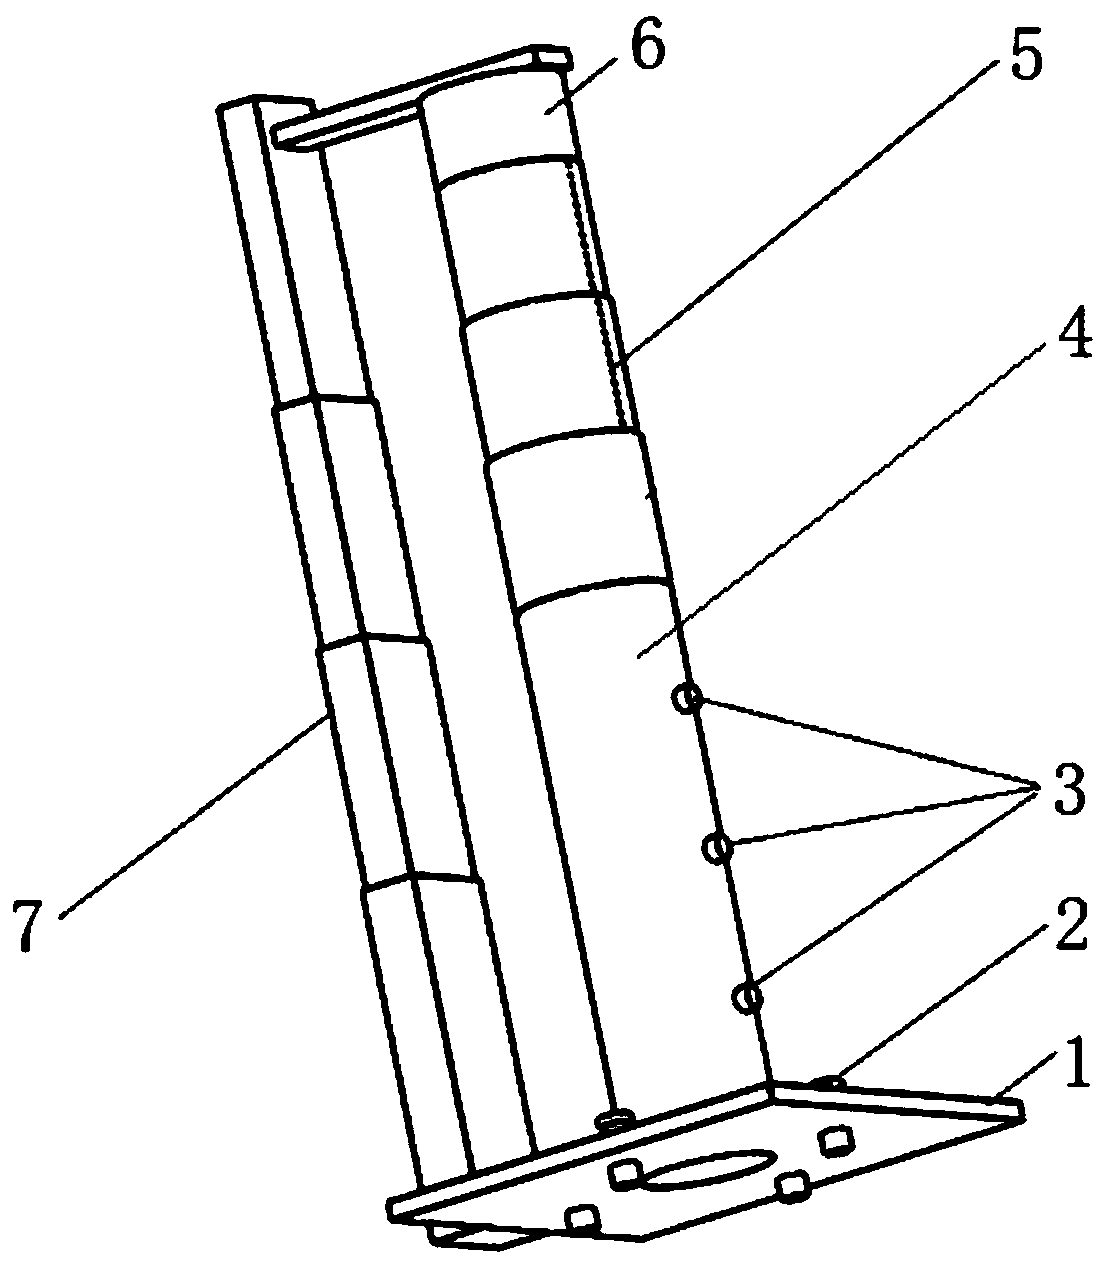 Acoustic impedance tube